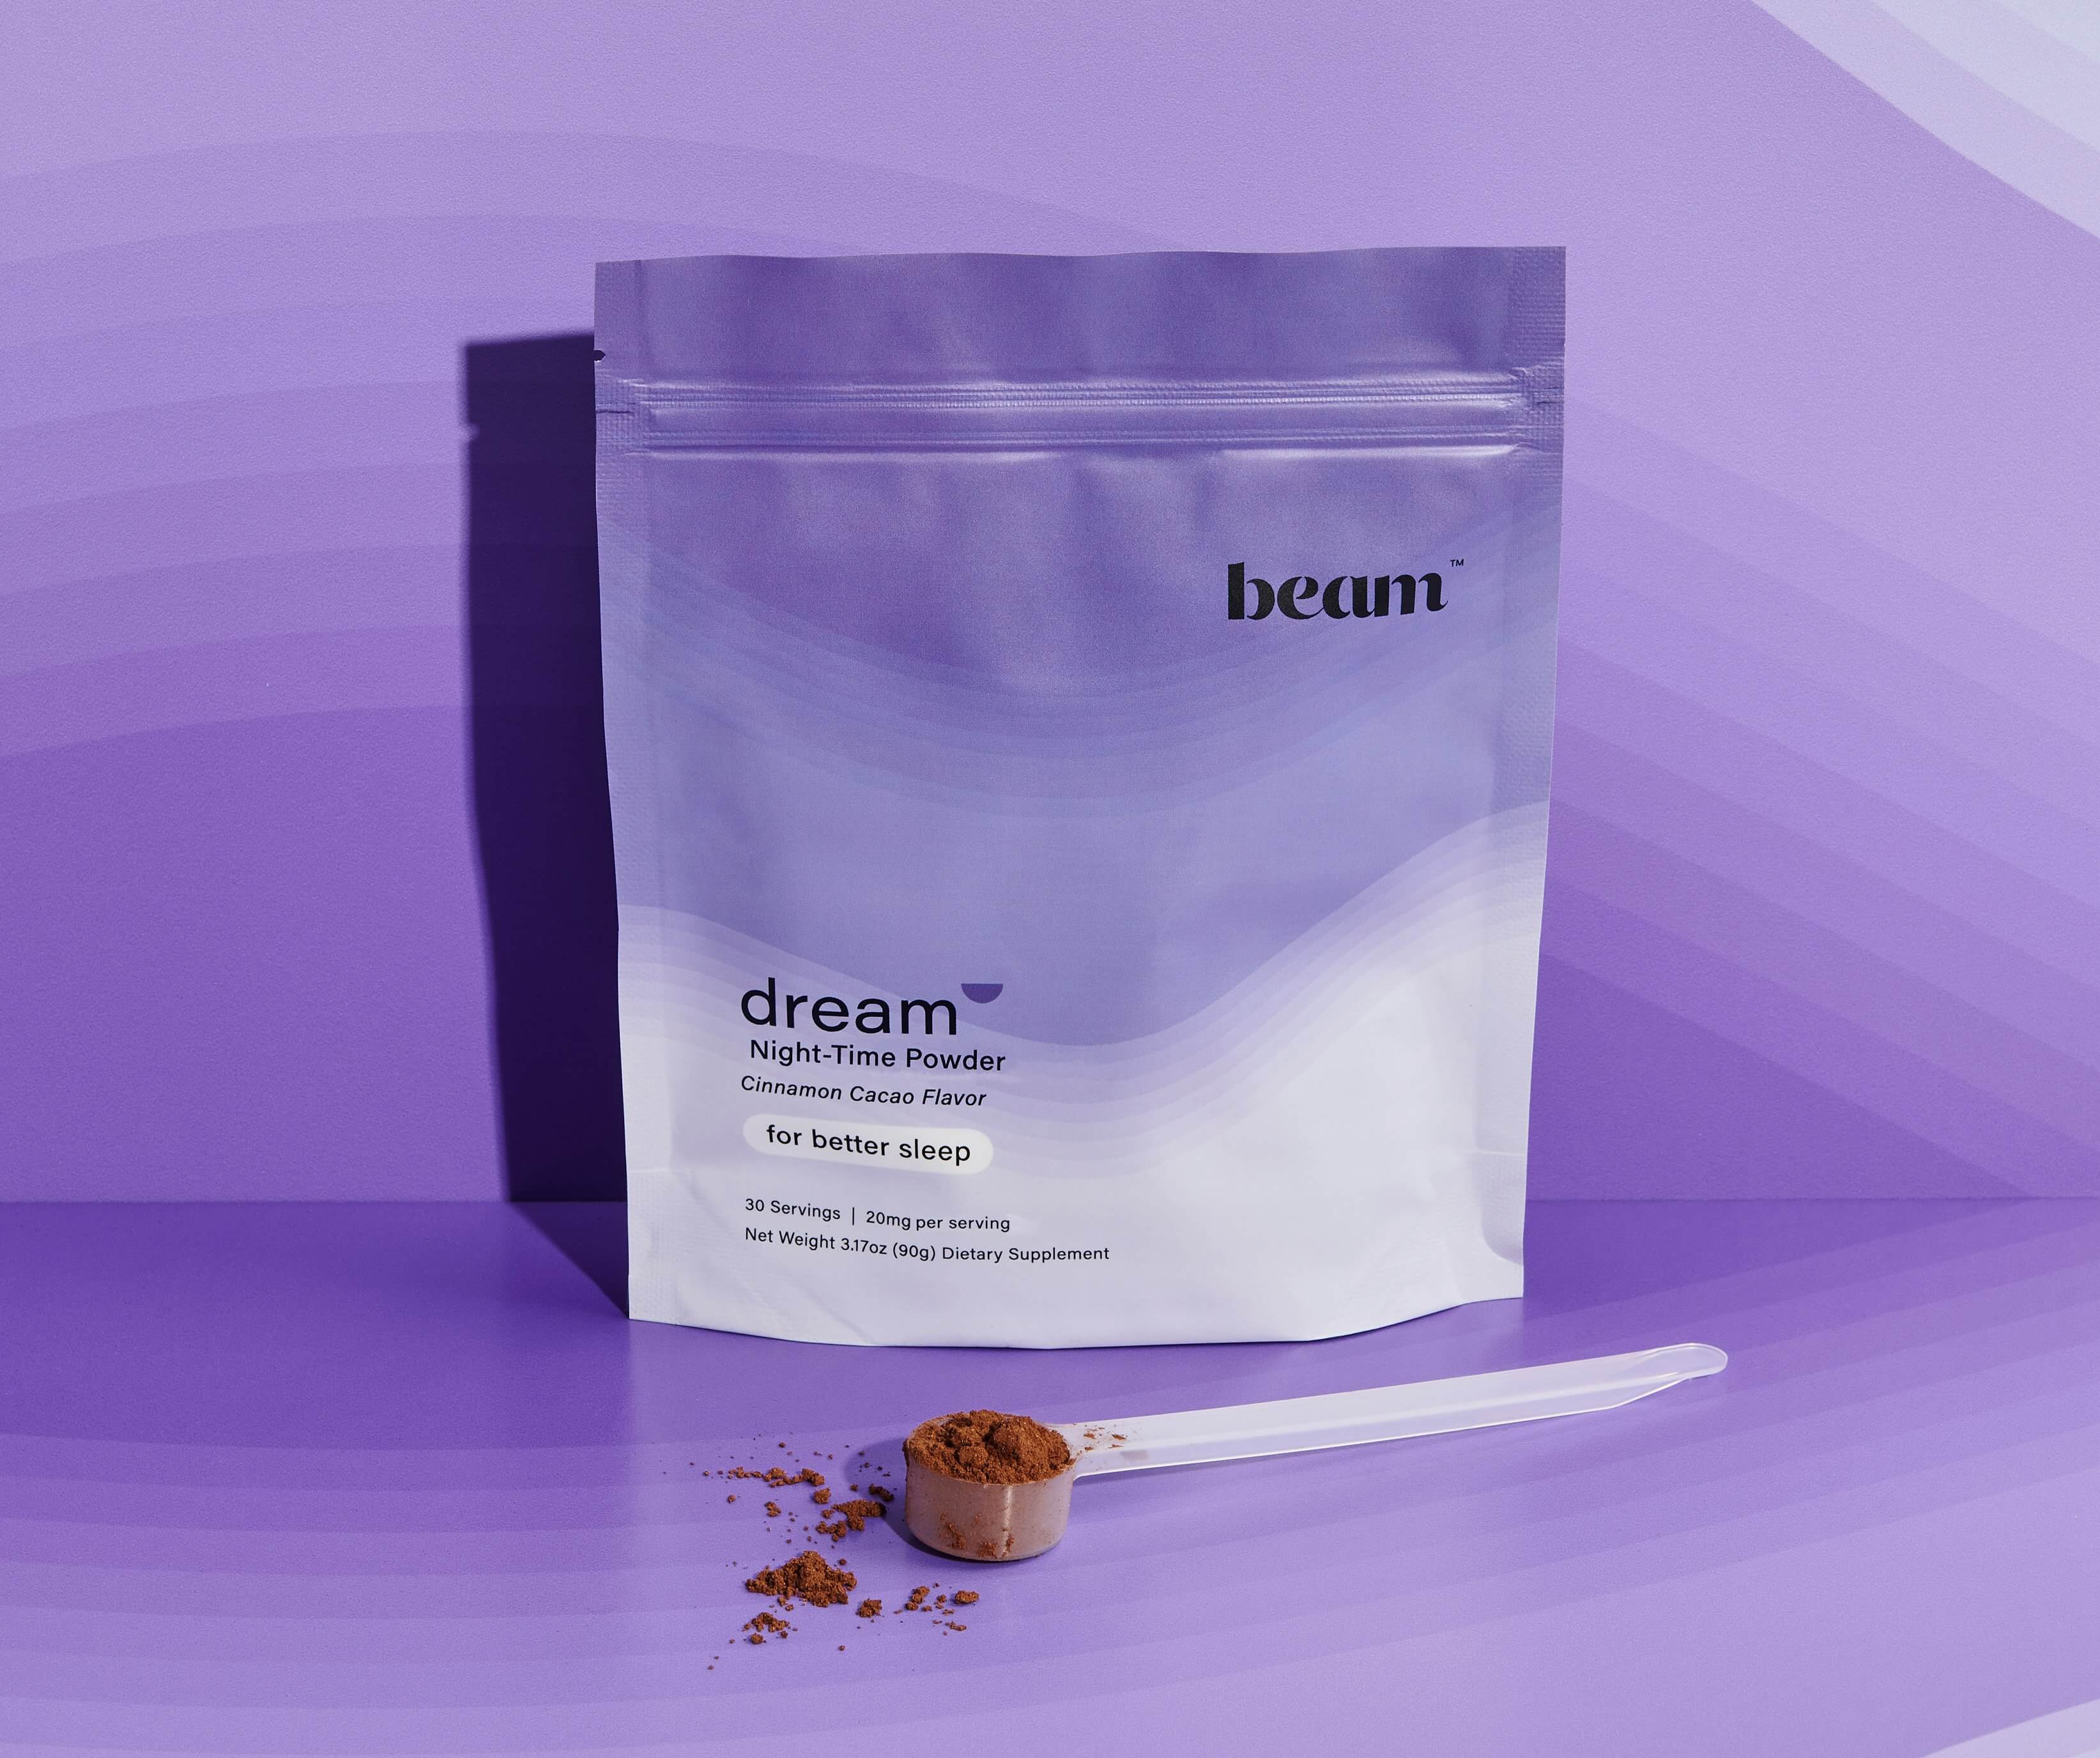 Dream Powder — save 30%, 3-month supply